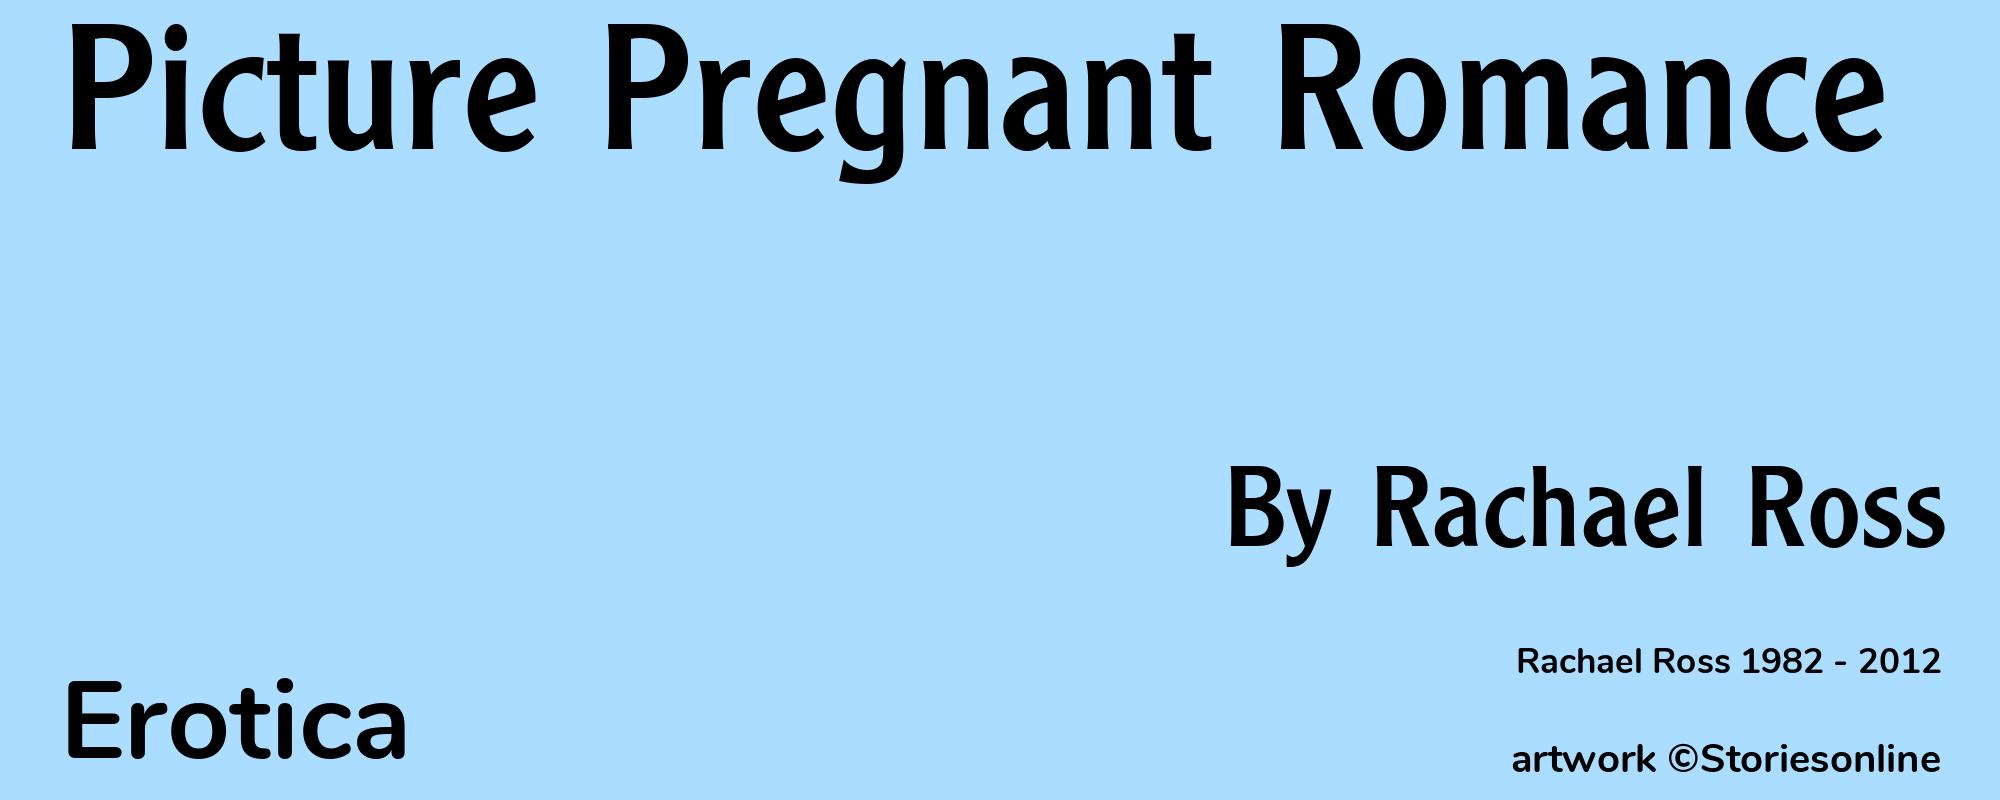 Picture Pregnant Romance - Cover